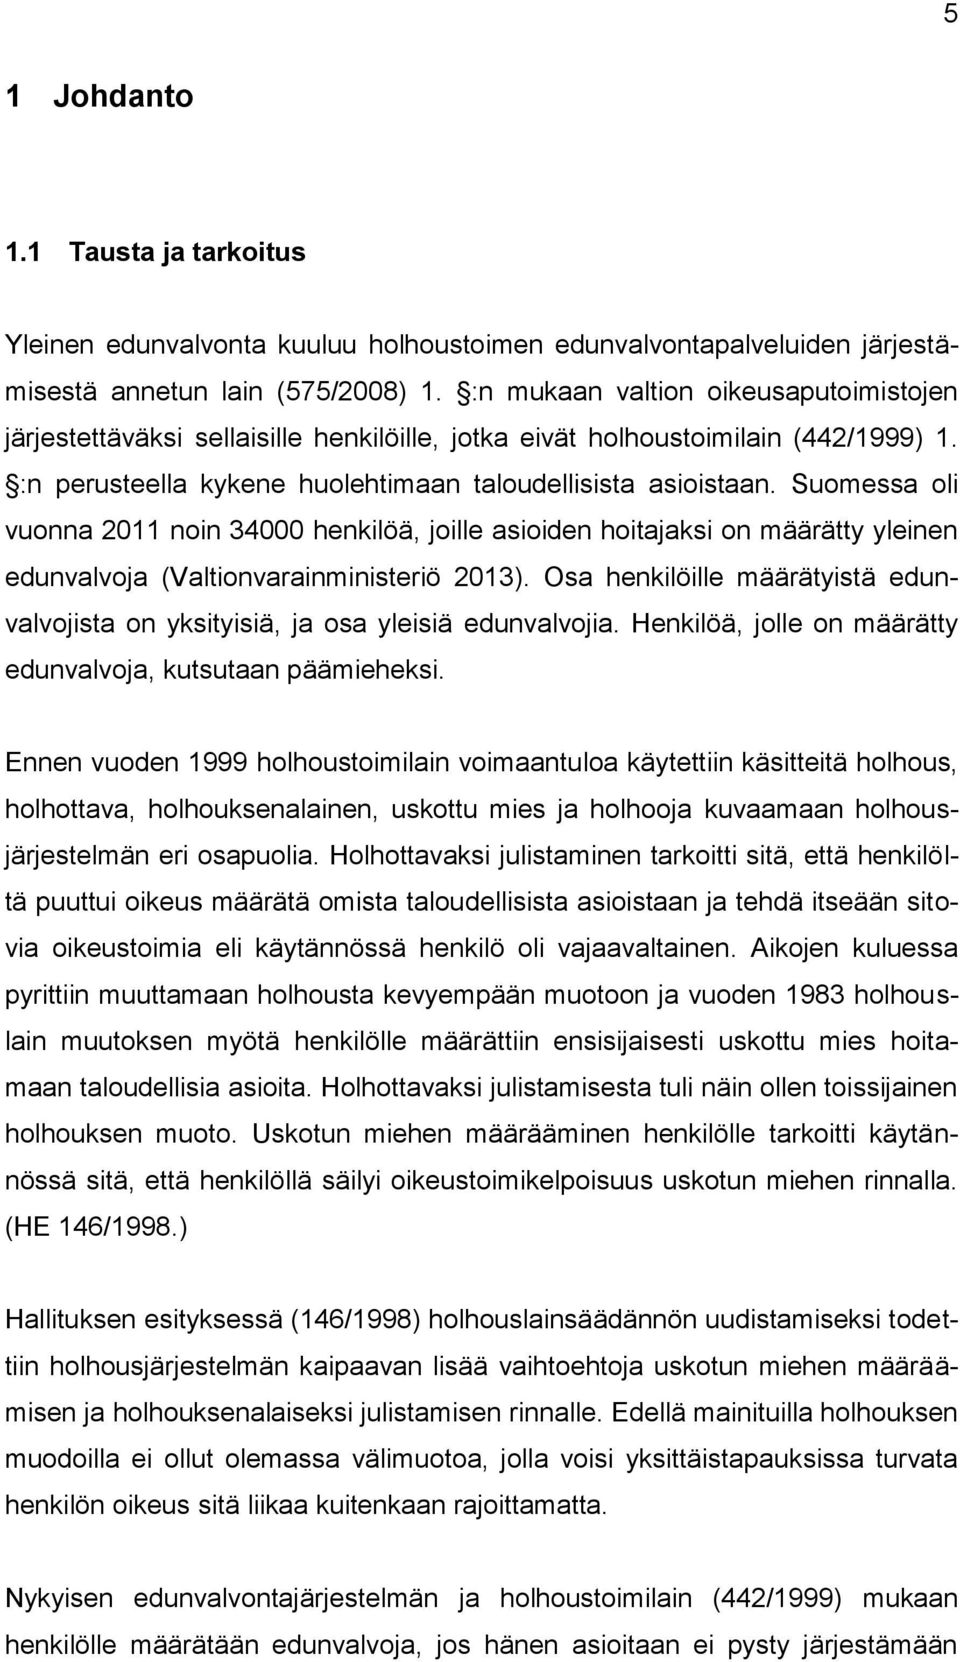 Suomessa oli vuonna 2011 noin 34000 henkilöä, joille asioiden hoitajaksi on määrätty yleinen edunvalvoja (Valtionvarainministeriö 2013).